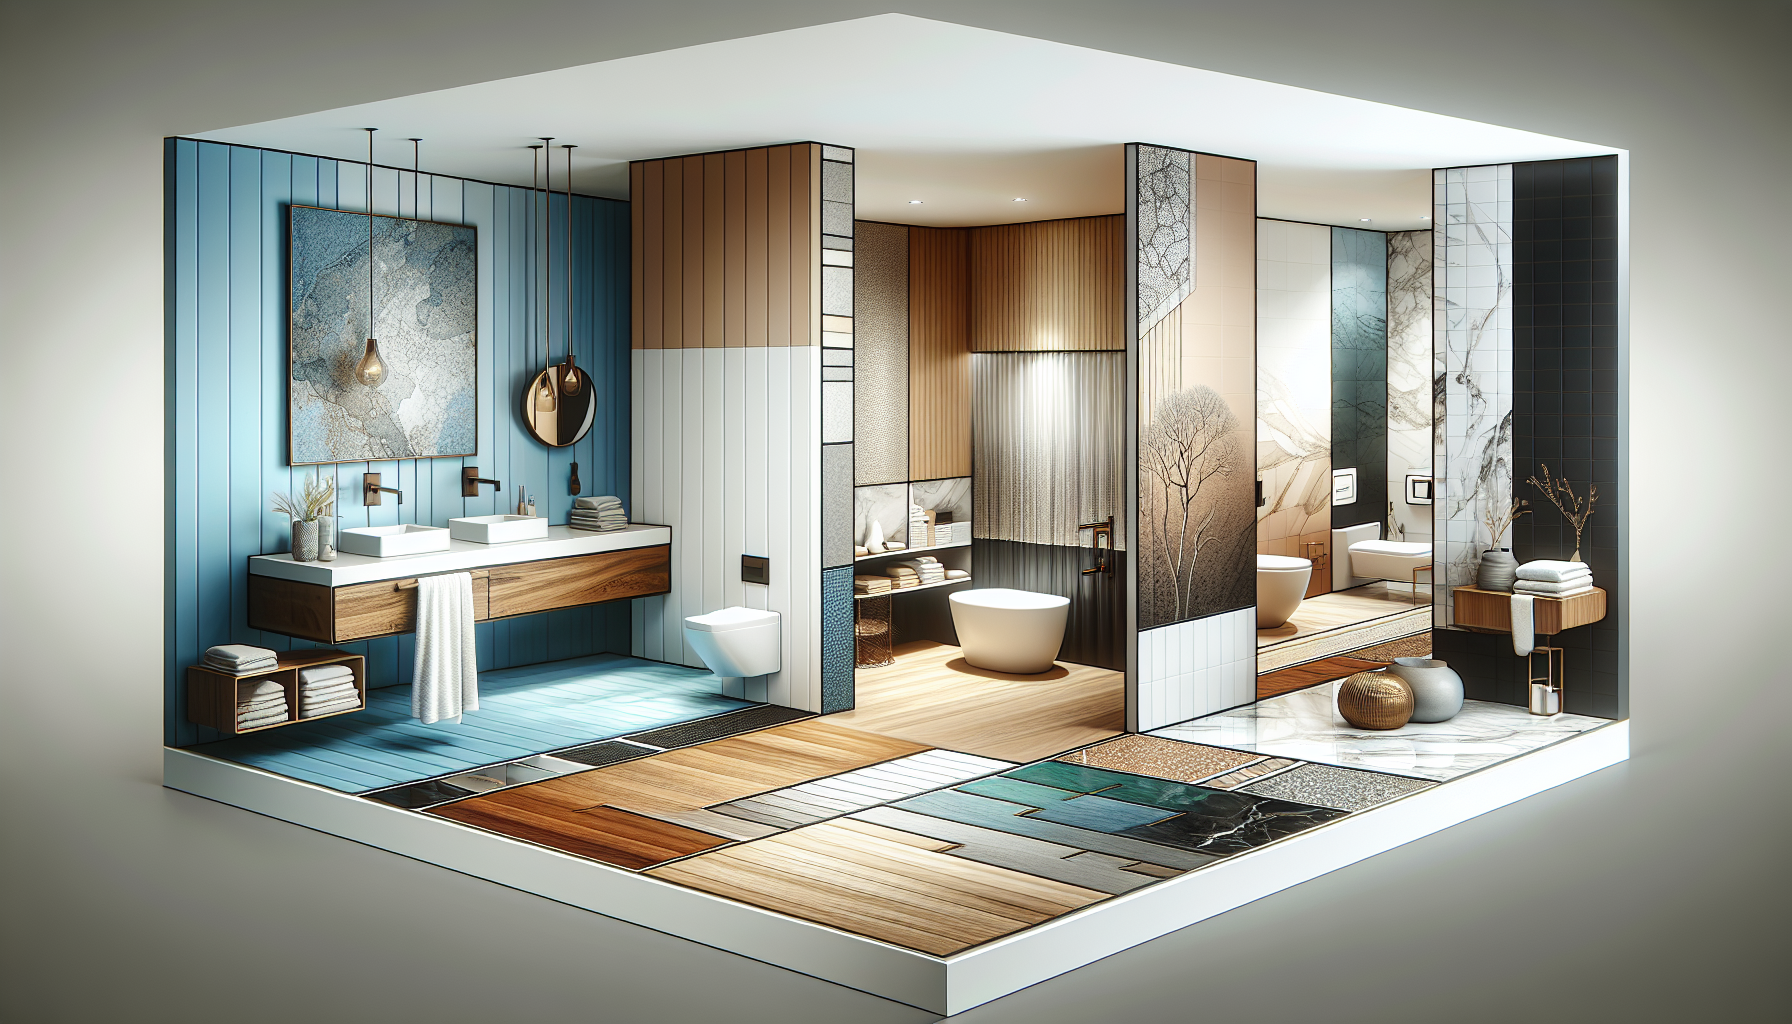 Farben und Materialien: Illustration von verschiedenen Farben und Materialien für die Badgestaltung in einem großen Badezimmer